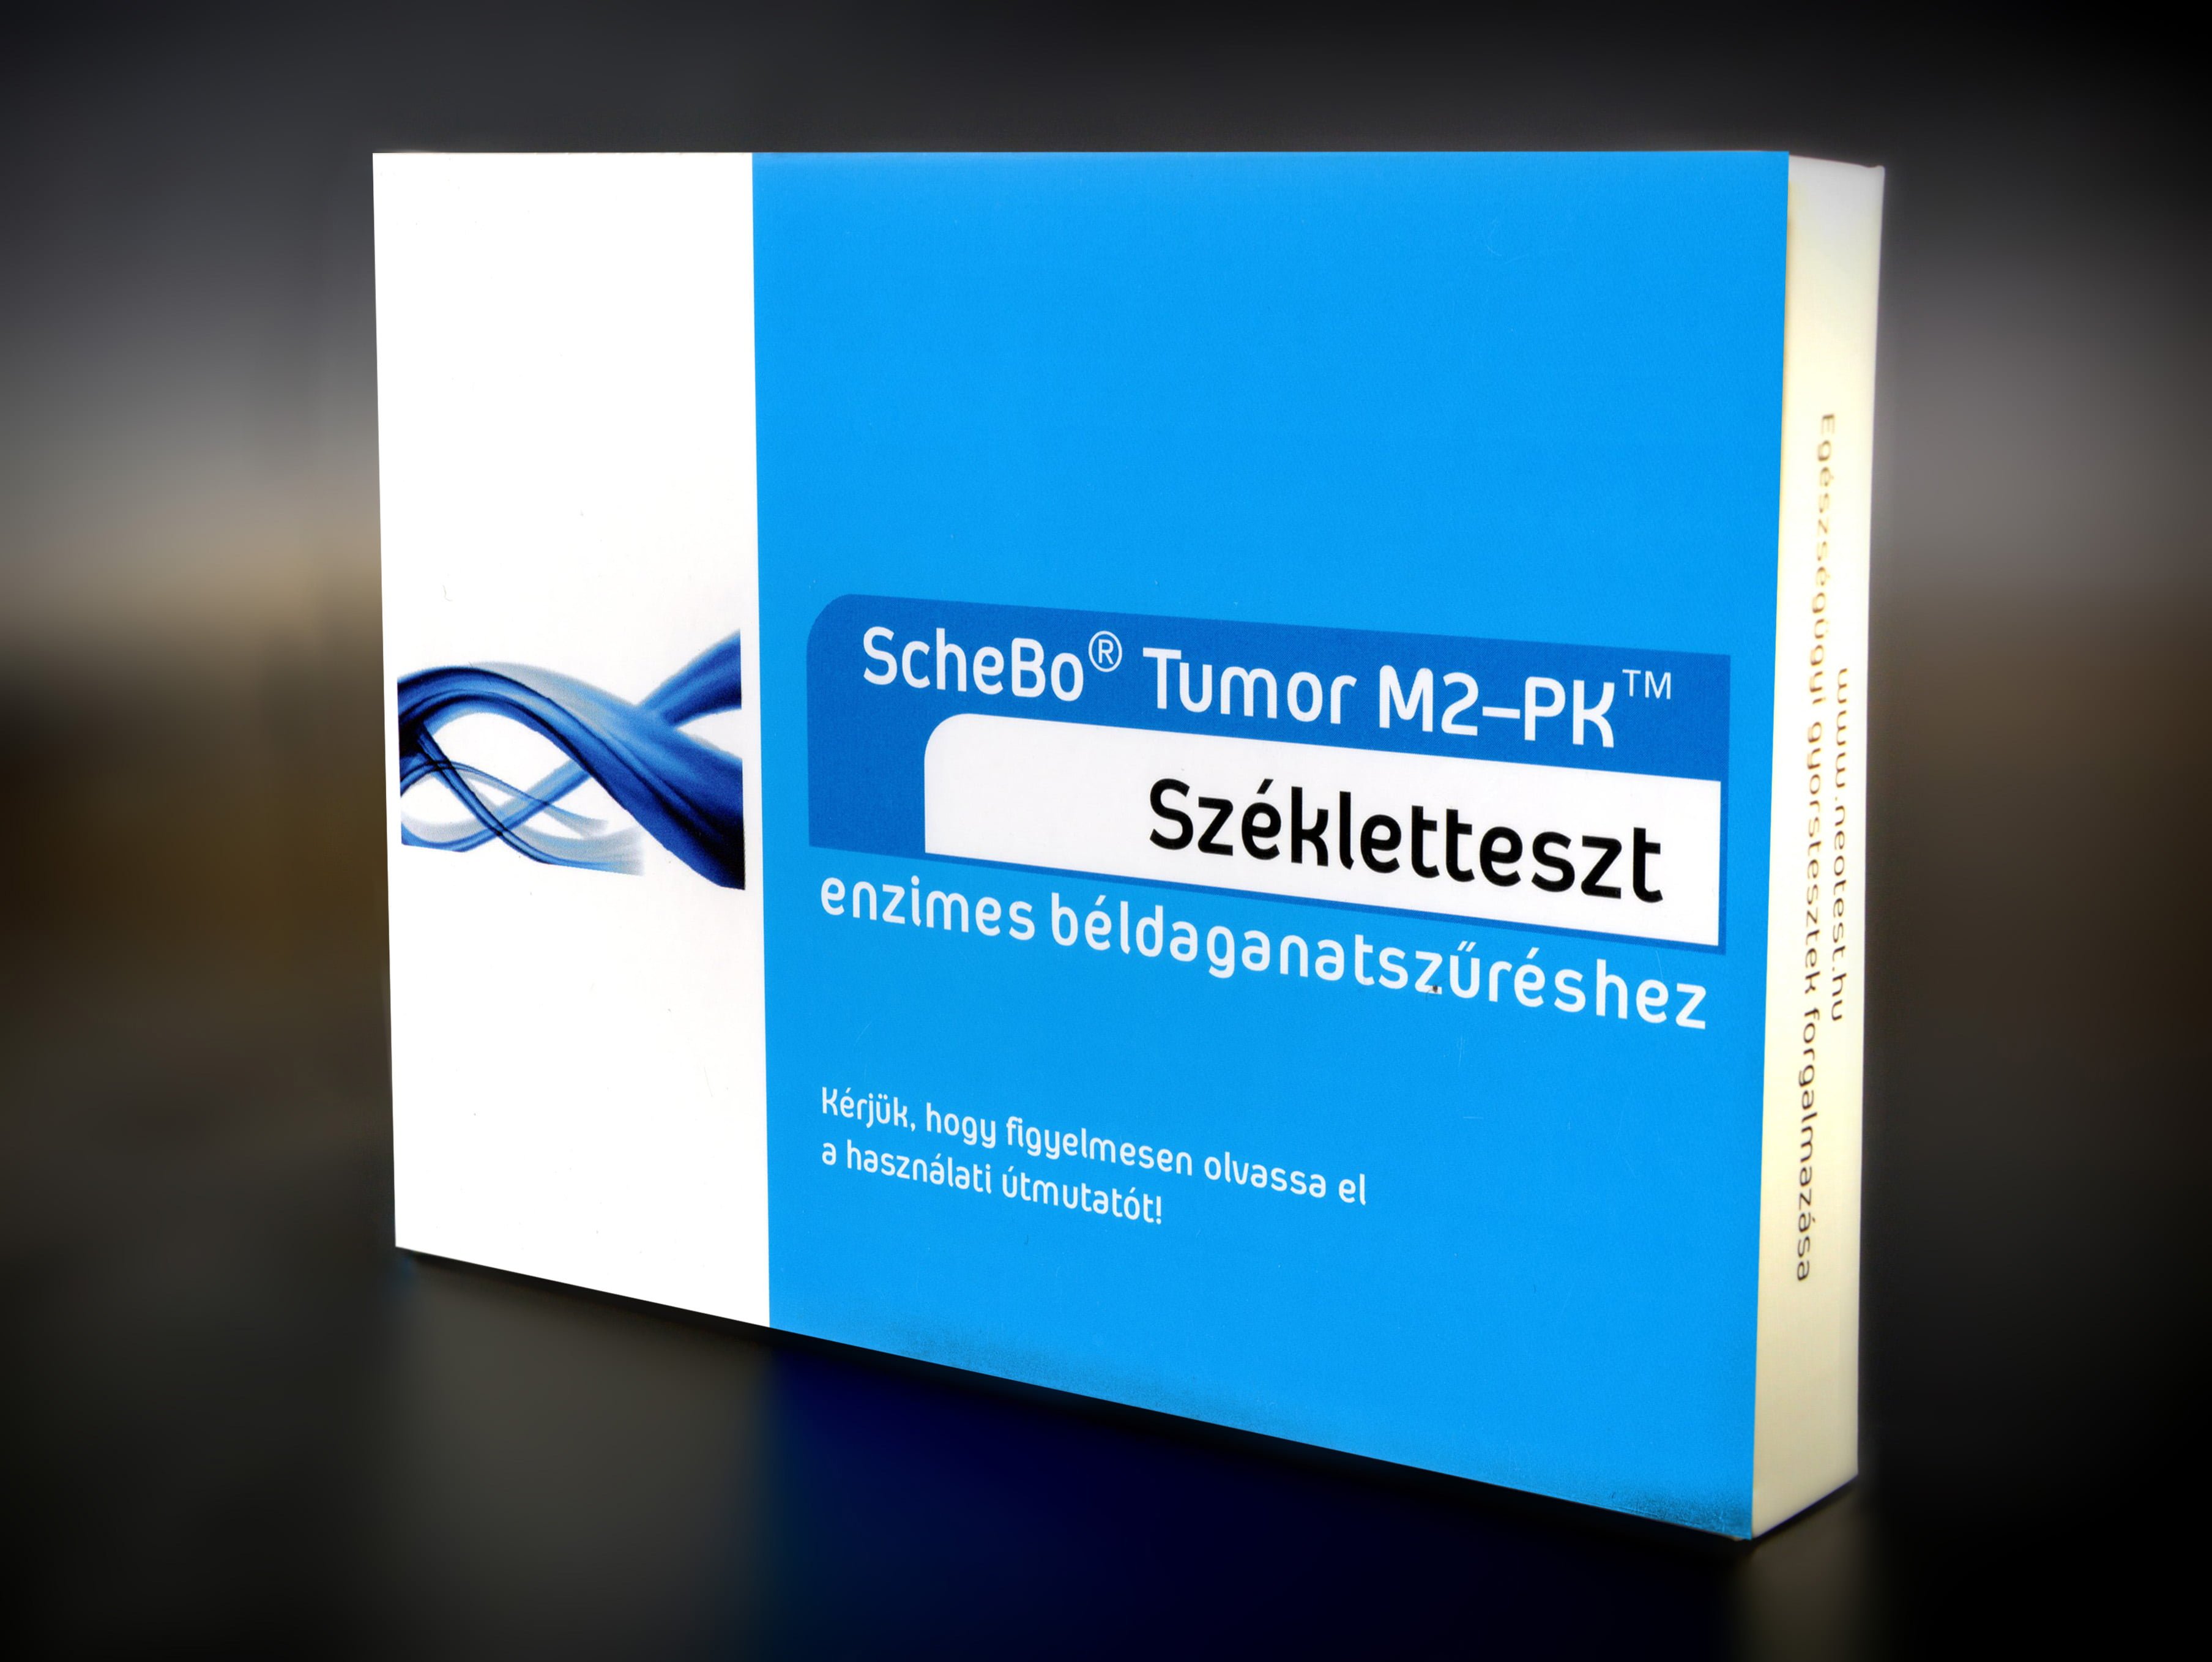 Enzimes béldaganatszűrő székletteszt ScheBo®• Tumor M2-PK